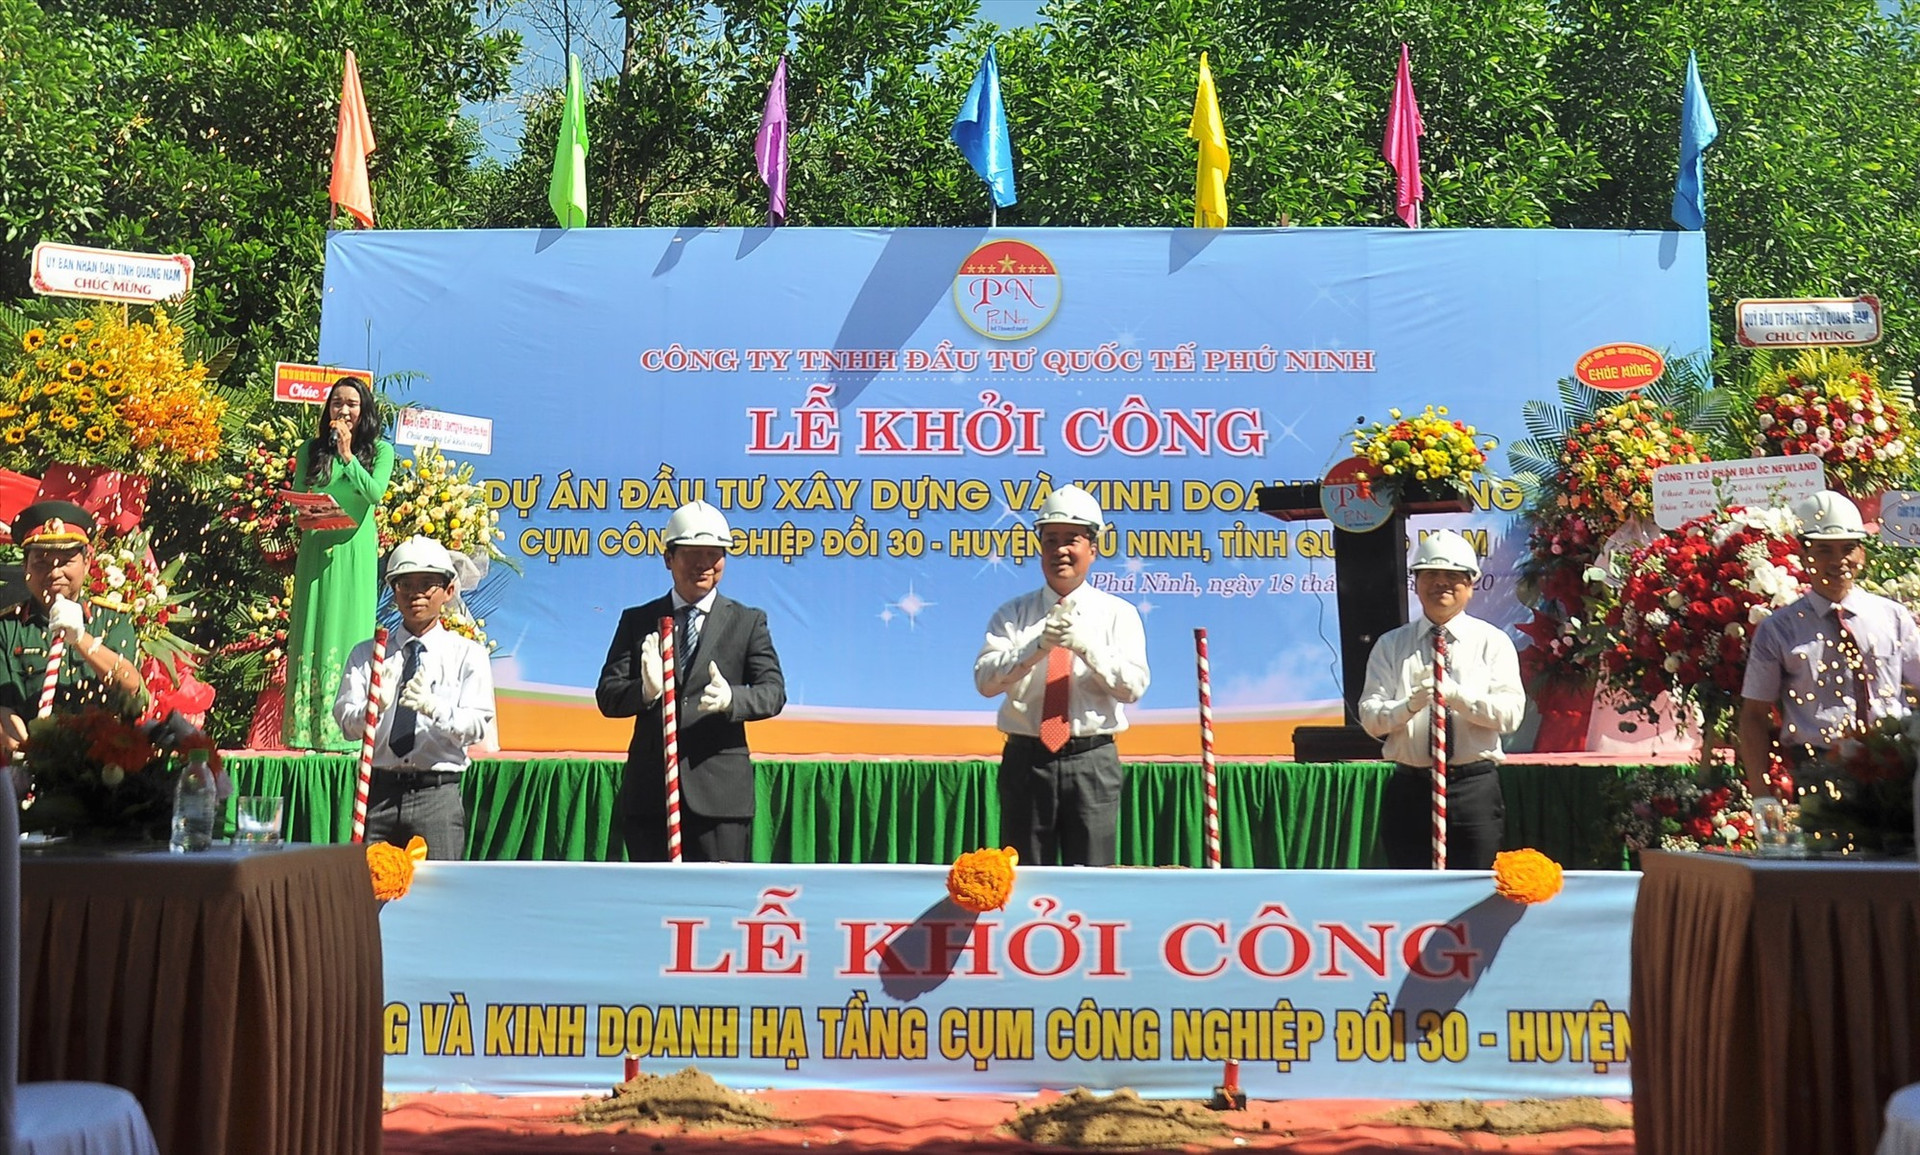 Huyện Phú Ninh tổ chức khởi công dự án đầu tư hạ tầng Cụm công nghiệp Đồi 30. Ảnh: VINH ANH